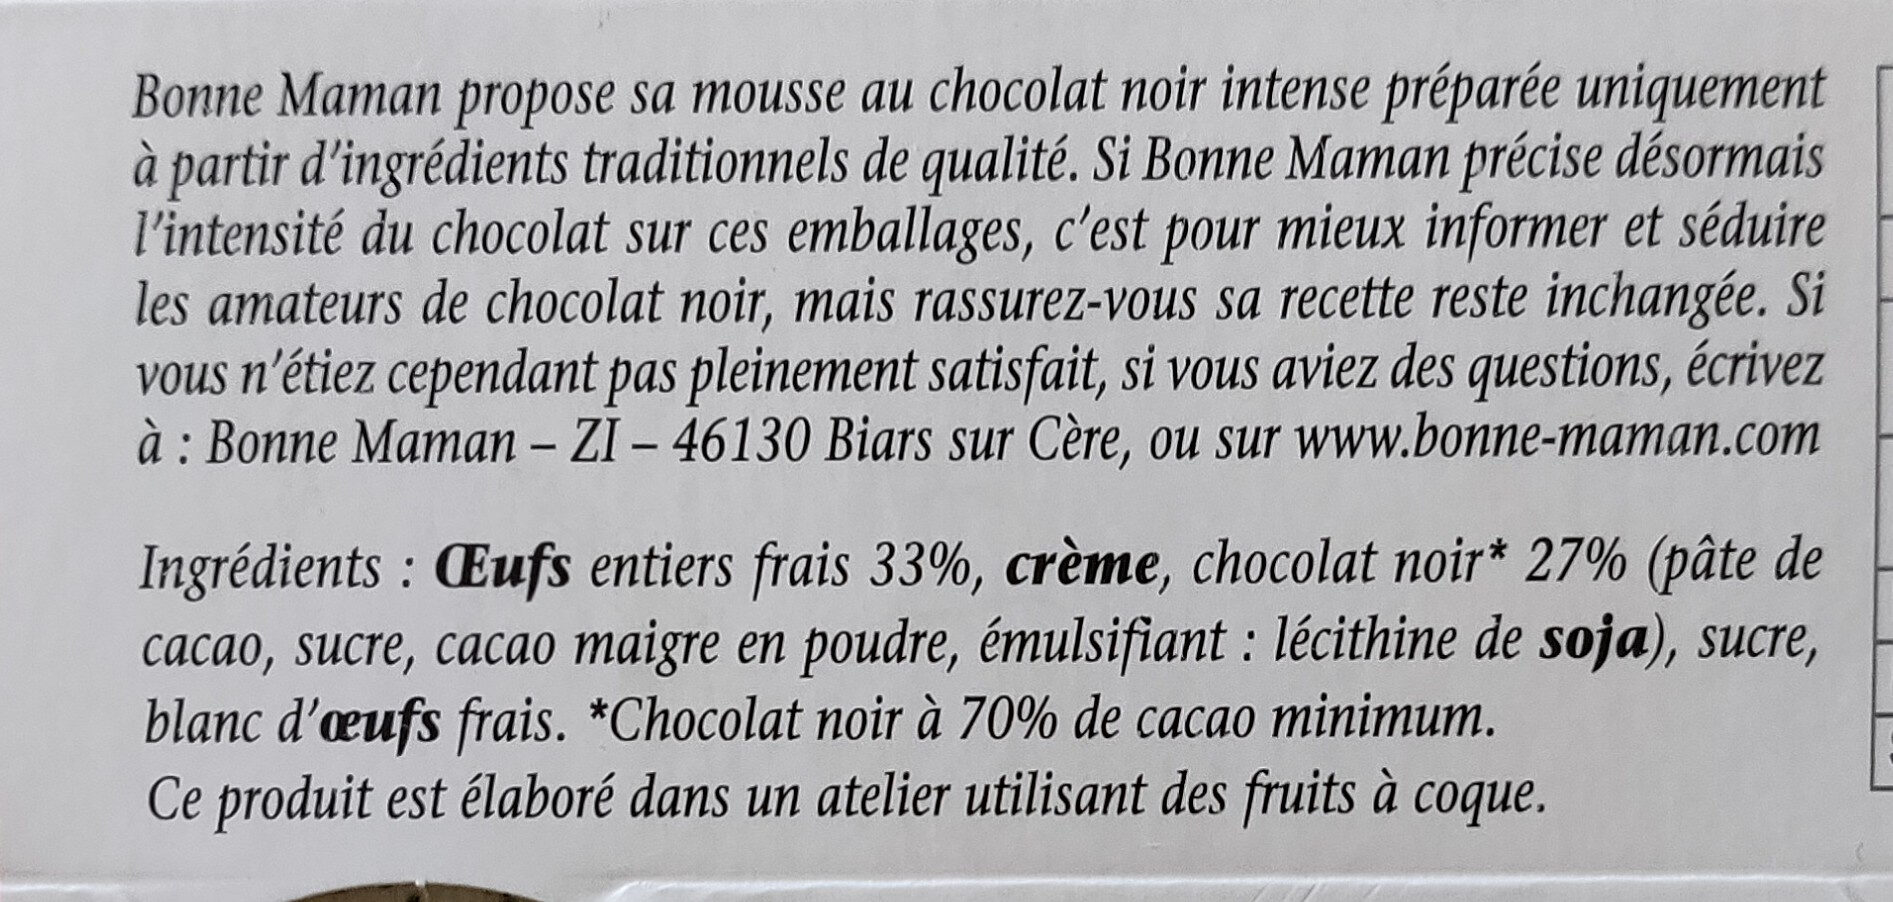 Mousse chocolat noir intense 4 x 50 g - Ingrédients - fr